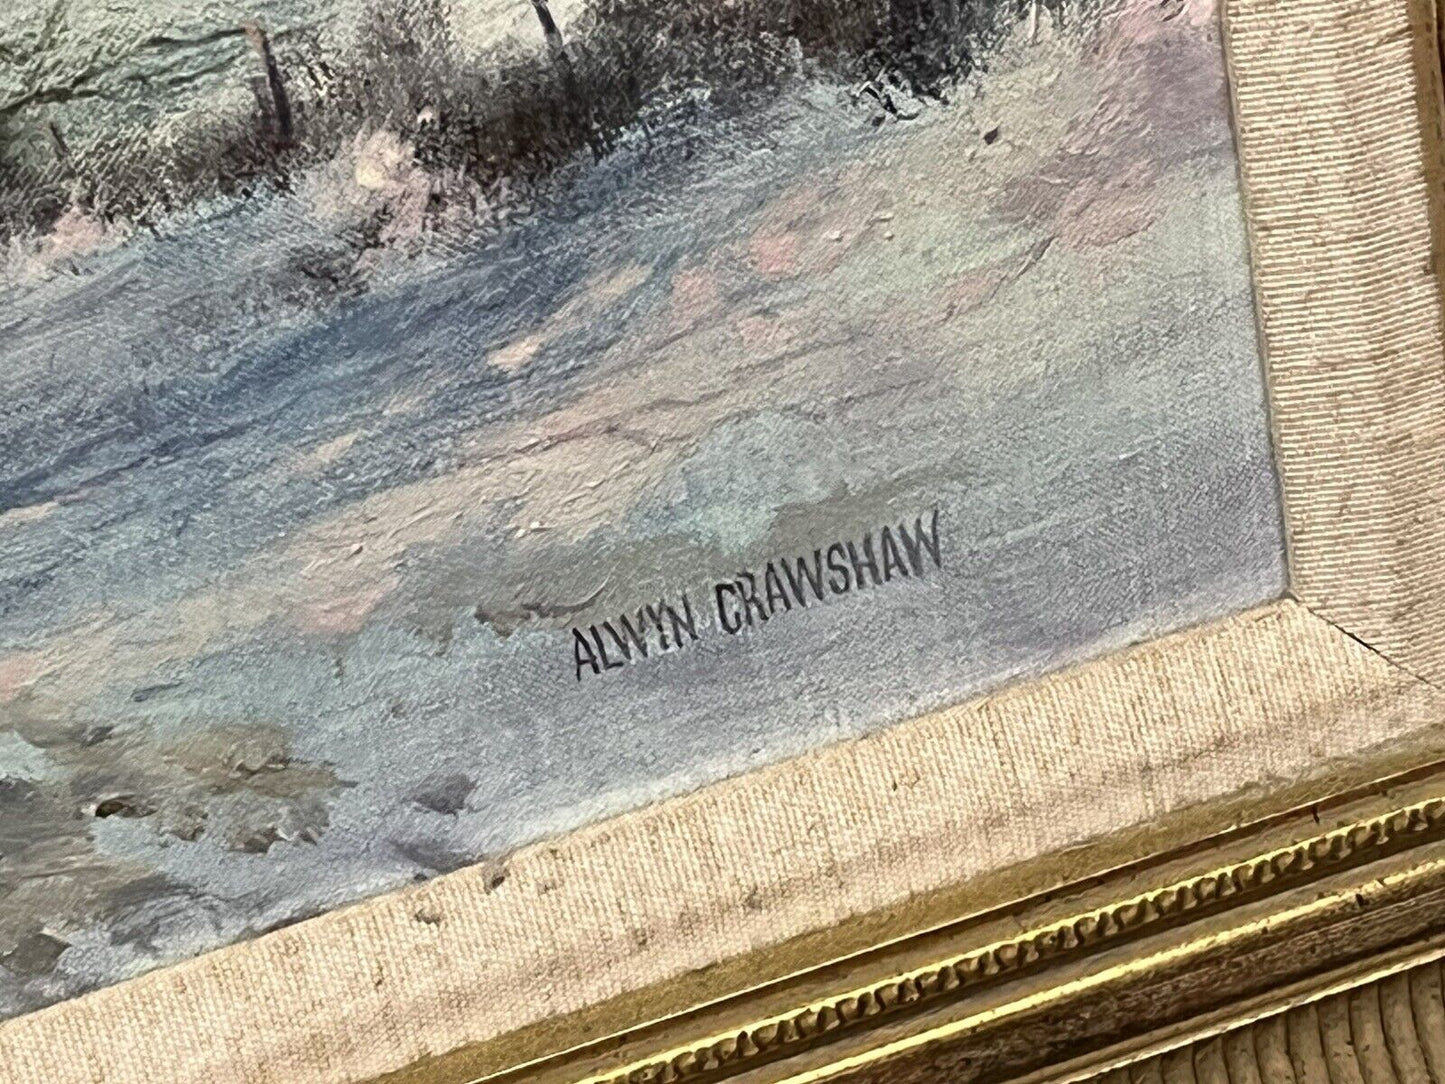 Alwyn Crawshaw, Winter Landscape Oil On Canvas In A Gilt Frame